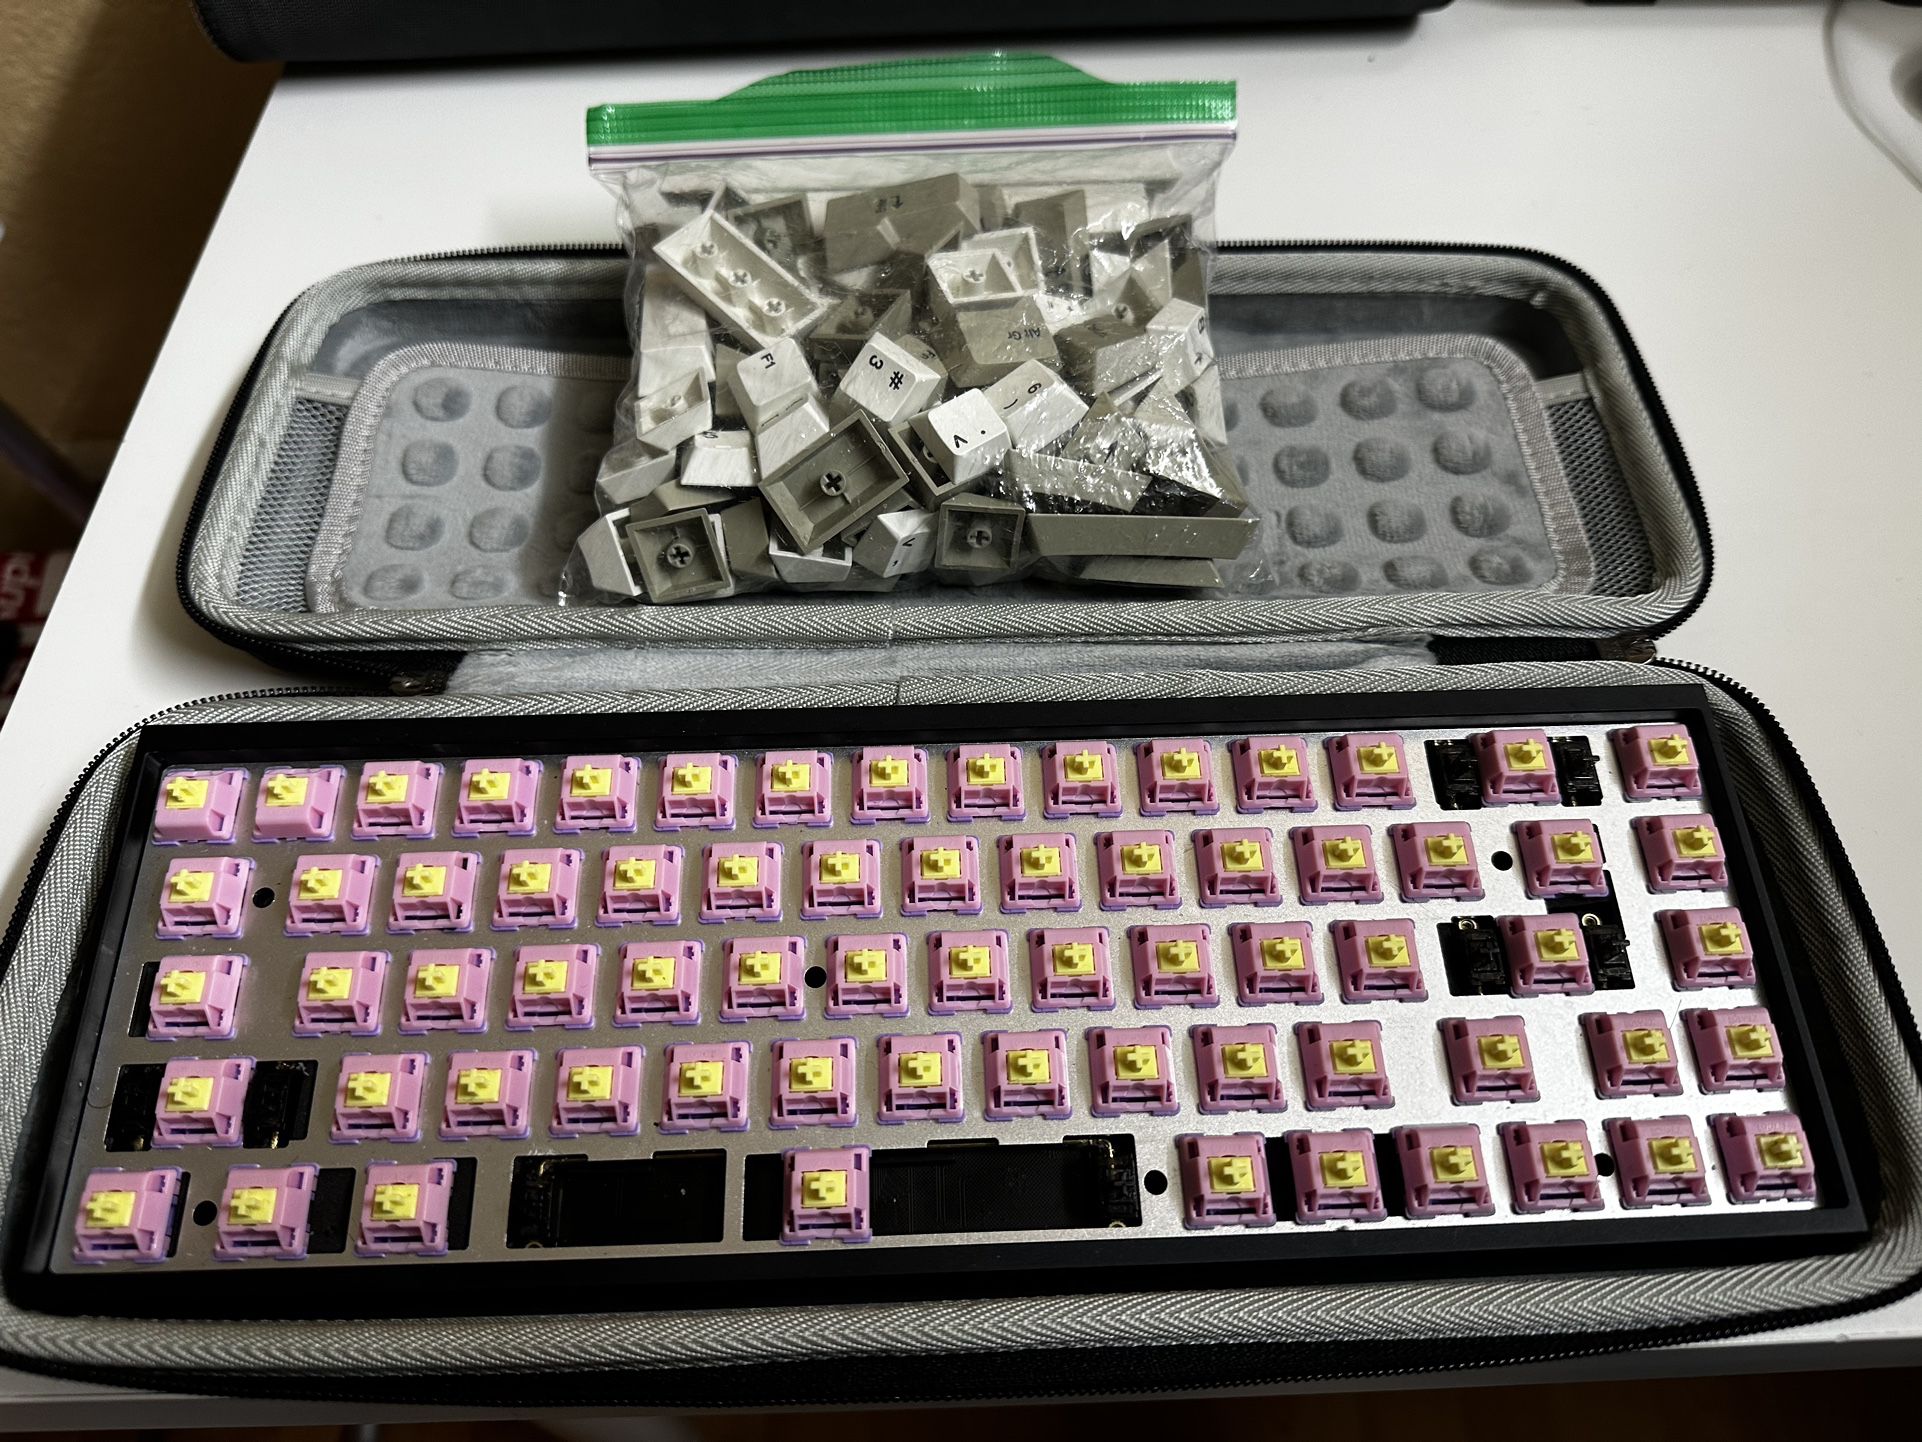 Custom Mechanical Keyboard tofu65